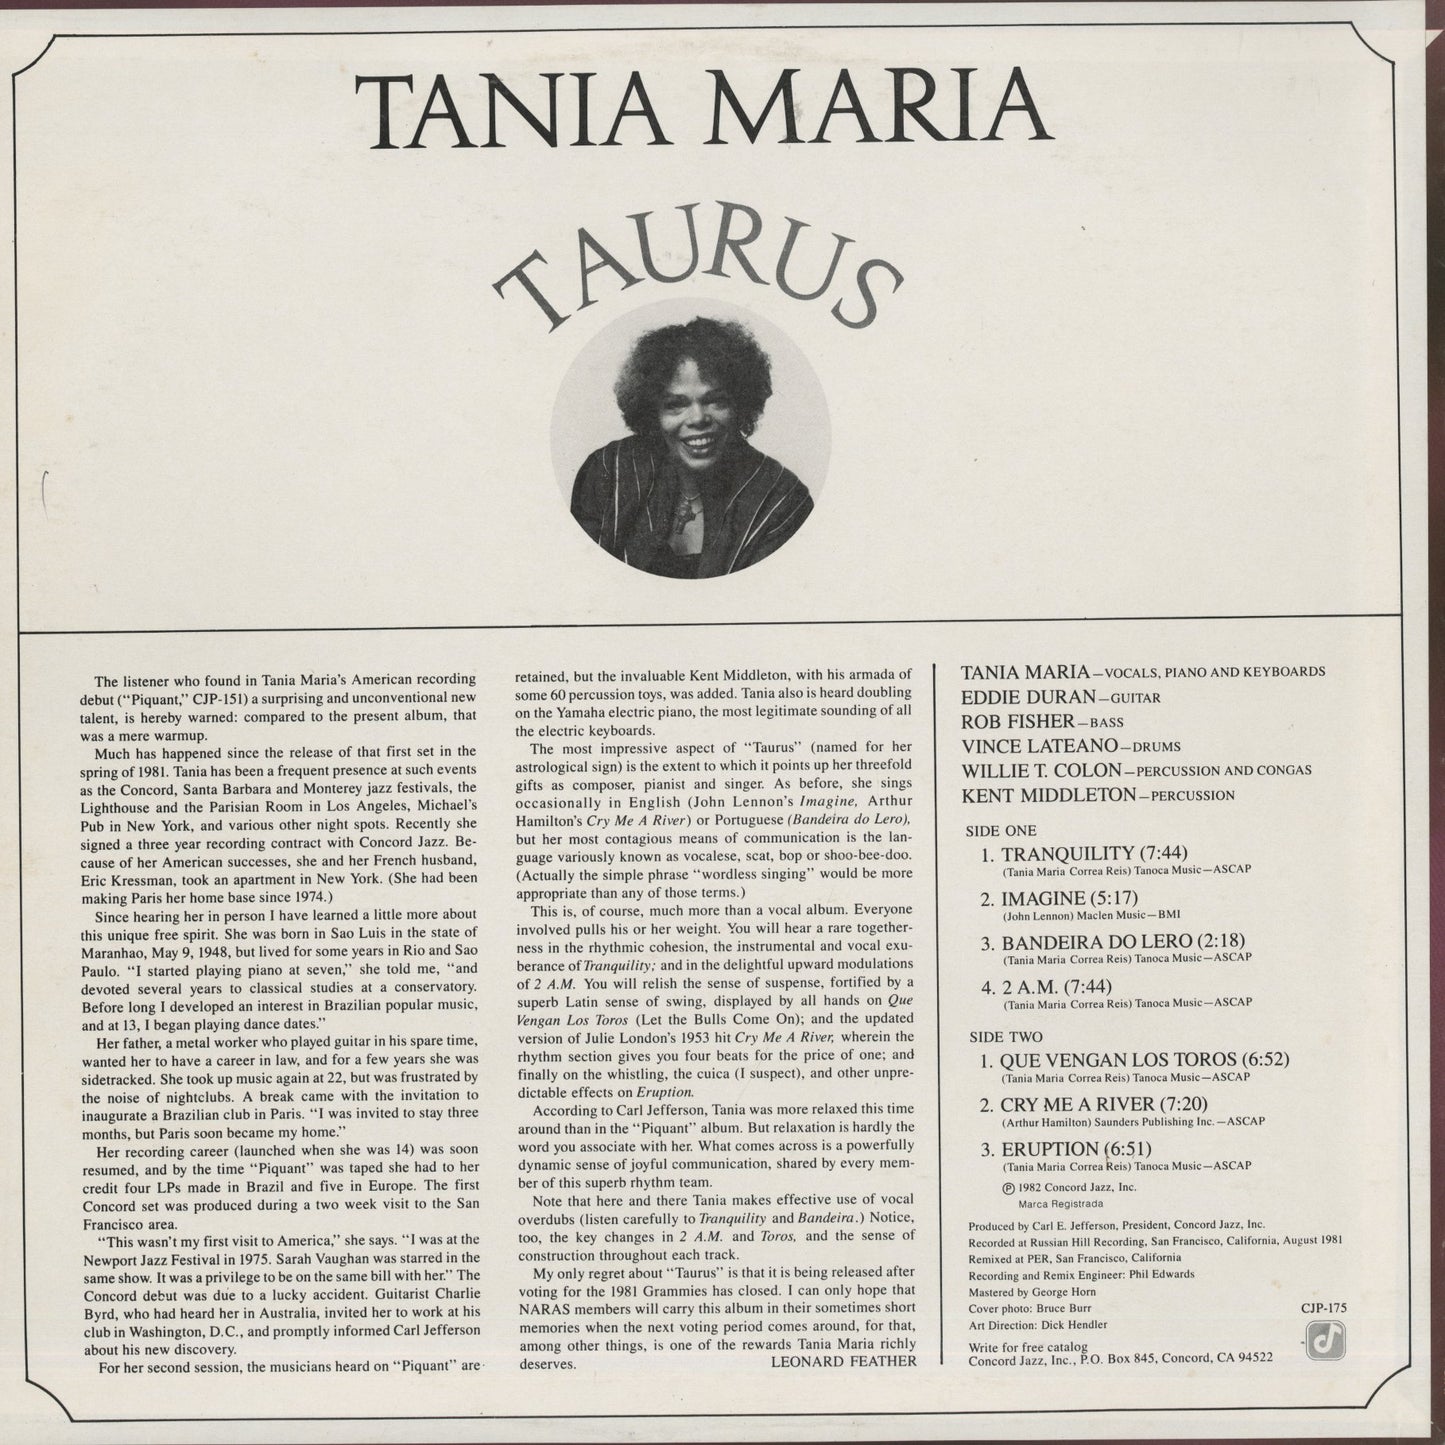 Tania Maria / タニア・マリア / Taurus (CJP 175)